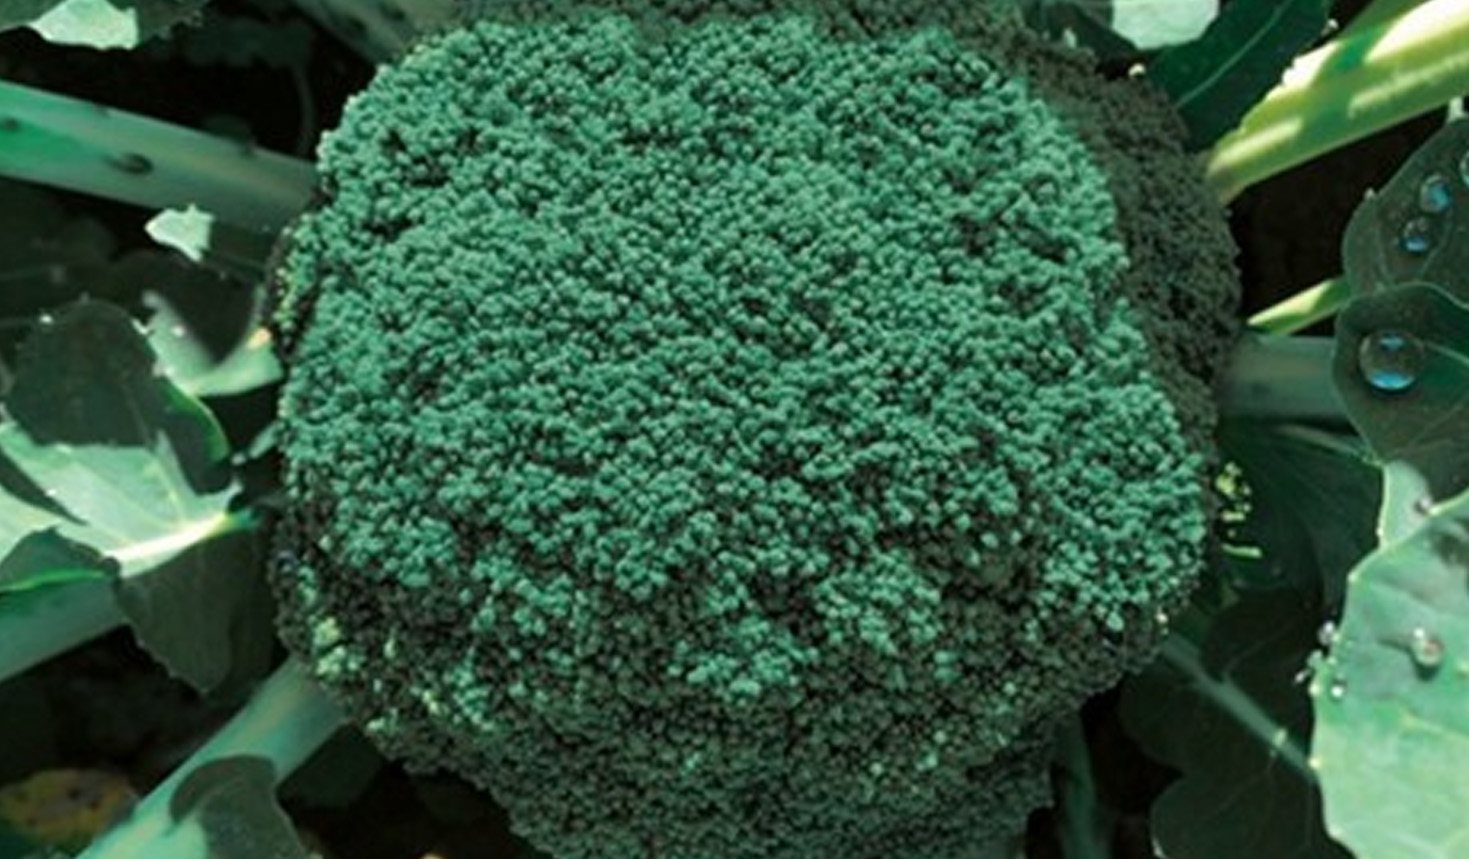 broccolo